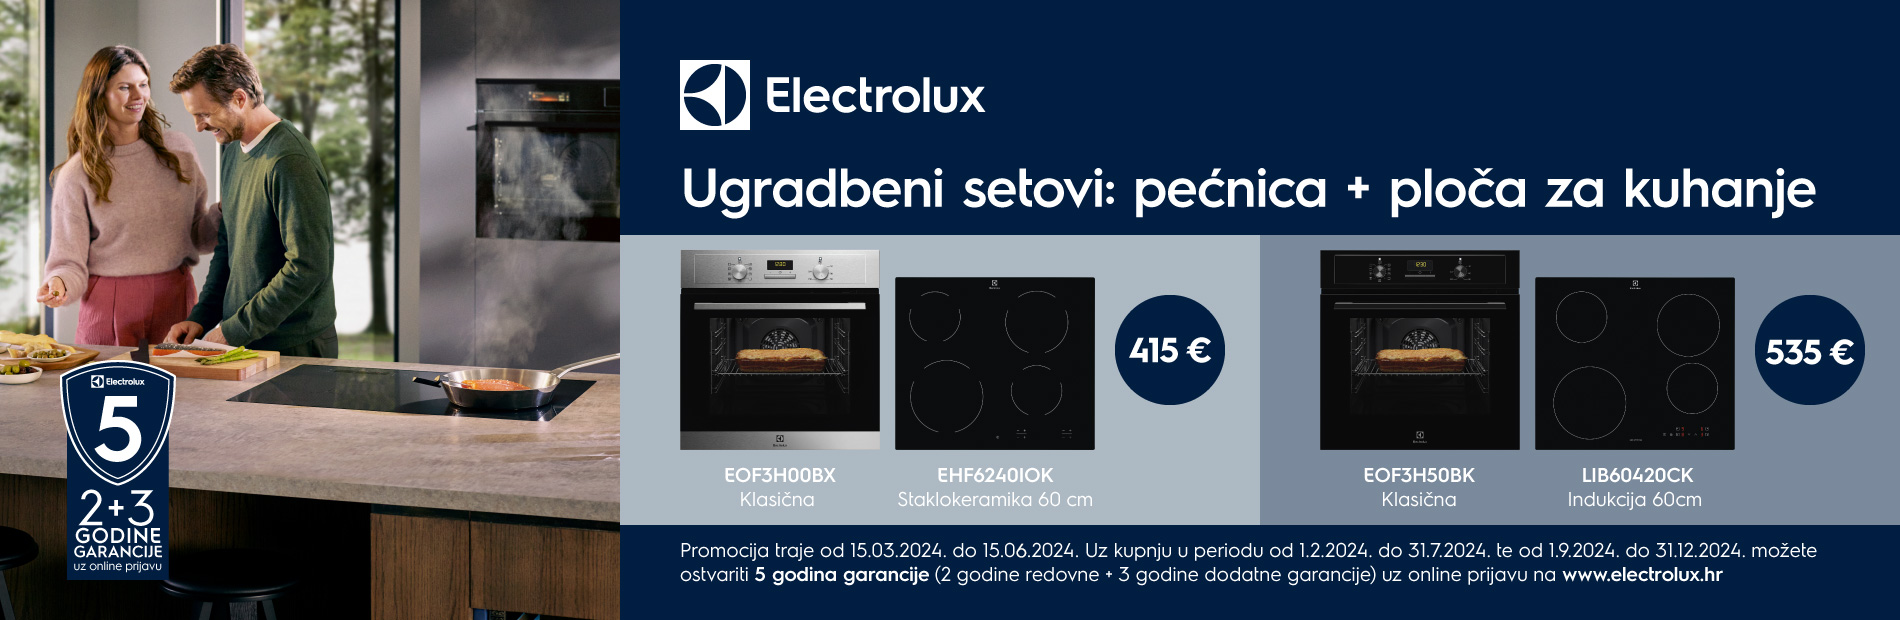 Electrolux promocija  11